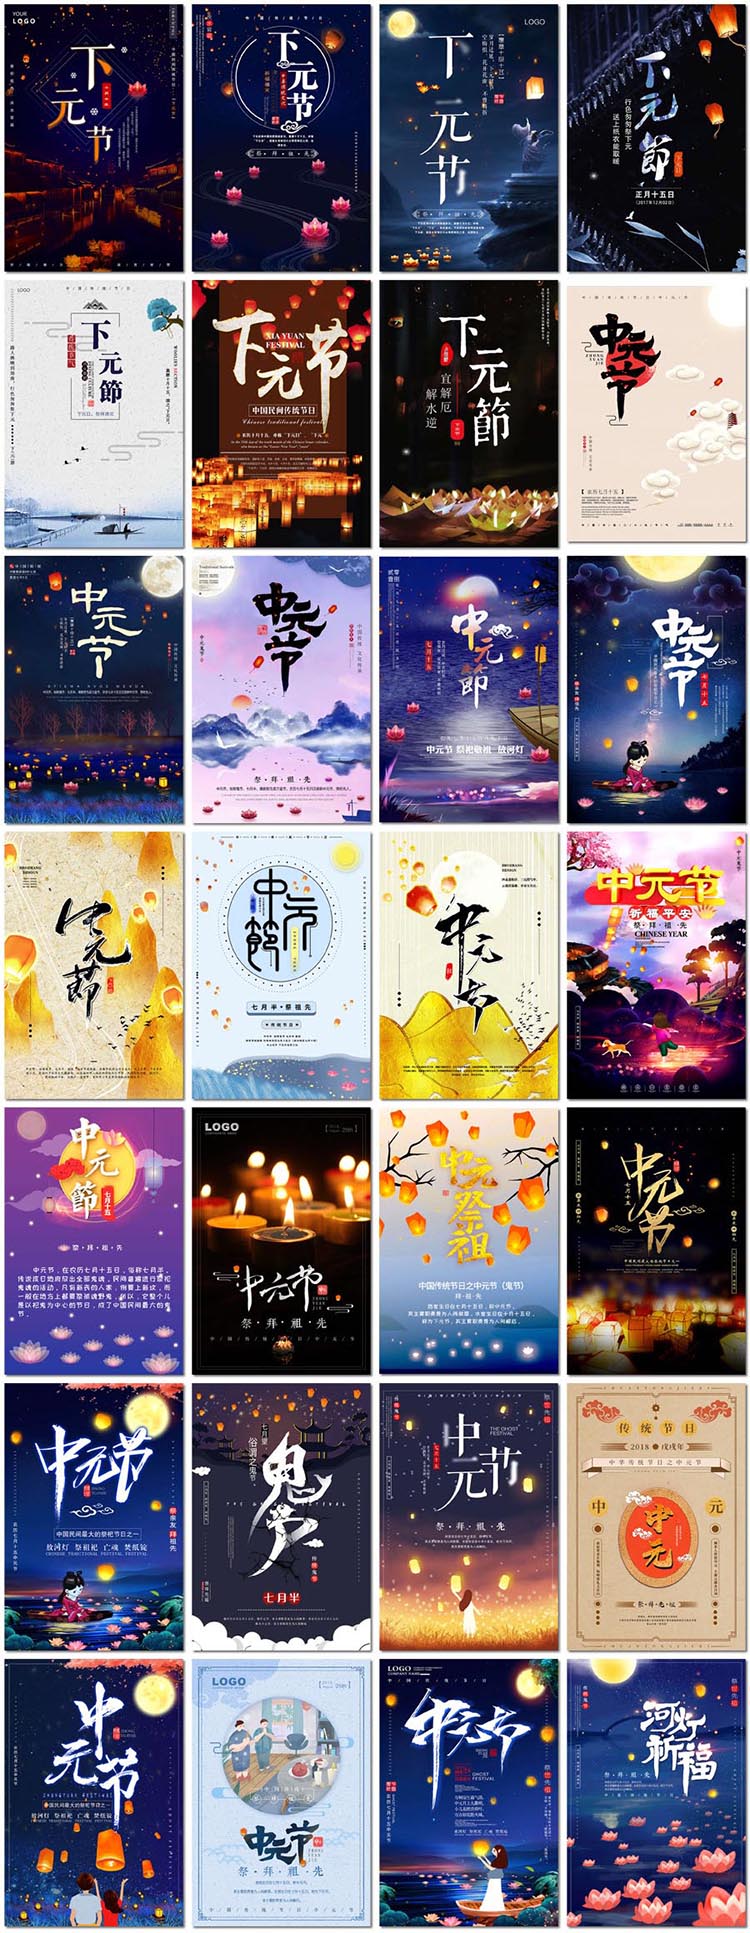 中元节海报七月半下元节河灯祈福祭祖祀鬼节psd海报模板素材设计